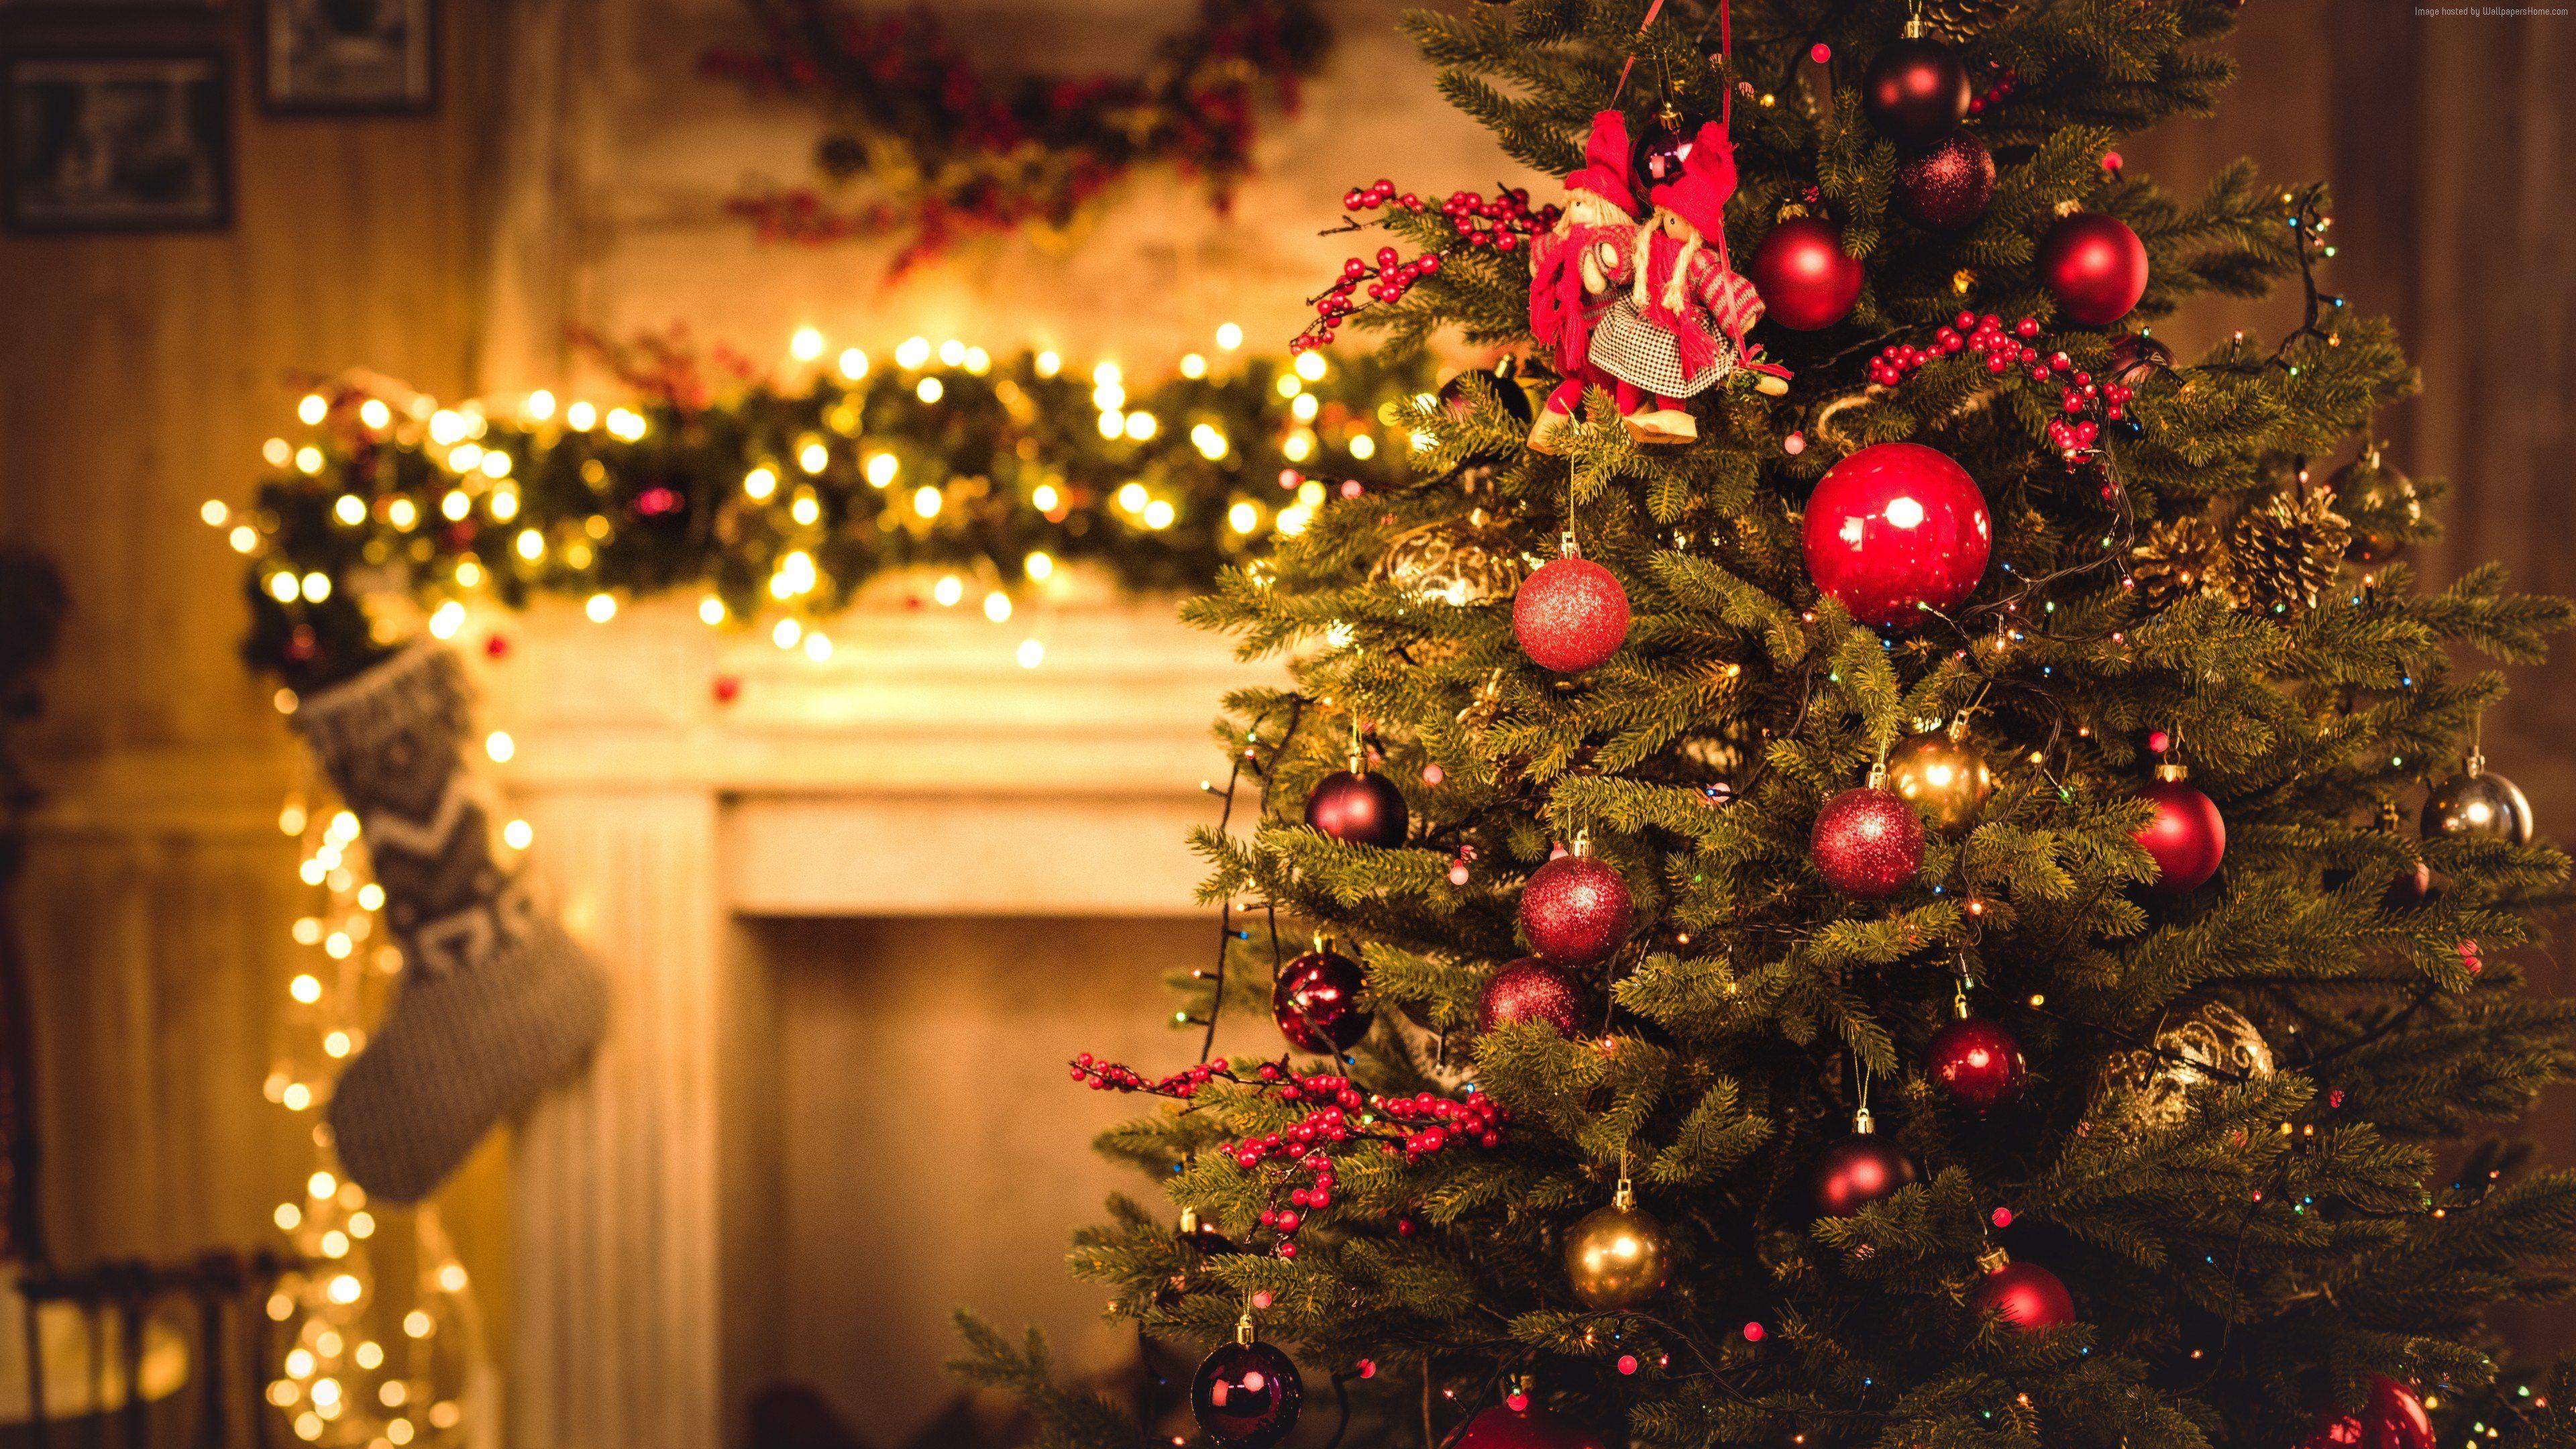 Giáng Sinh đang đến rất gần, hãy cùng tạo điểm nhấn cho màn hình với bộ sưu tập hình nền Giáng Sinh Widescreen đầy ấn tượng và phong phú. Mỗi hình nền sẽ mang đến cho bạn cảm giác thật hoàn hảo để đón chào mùa lễ hội đầy ý nghĩa.